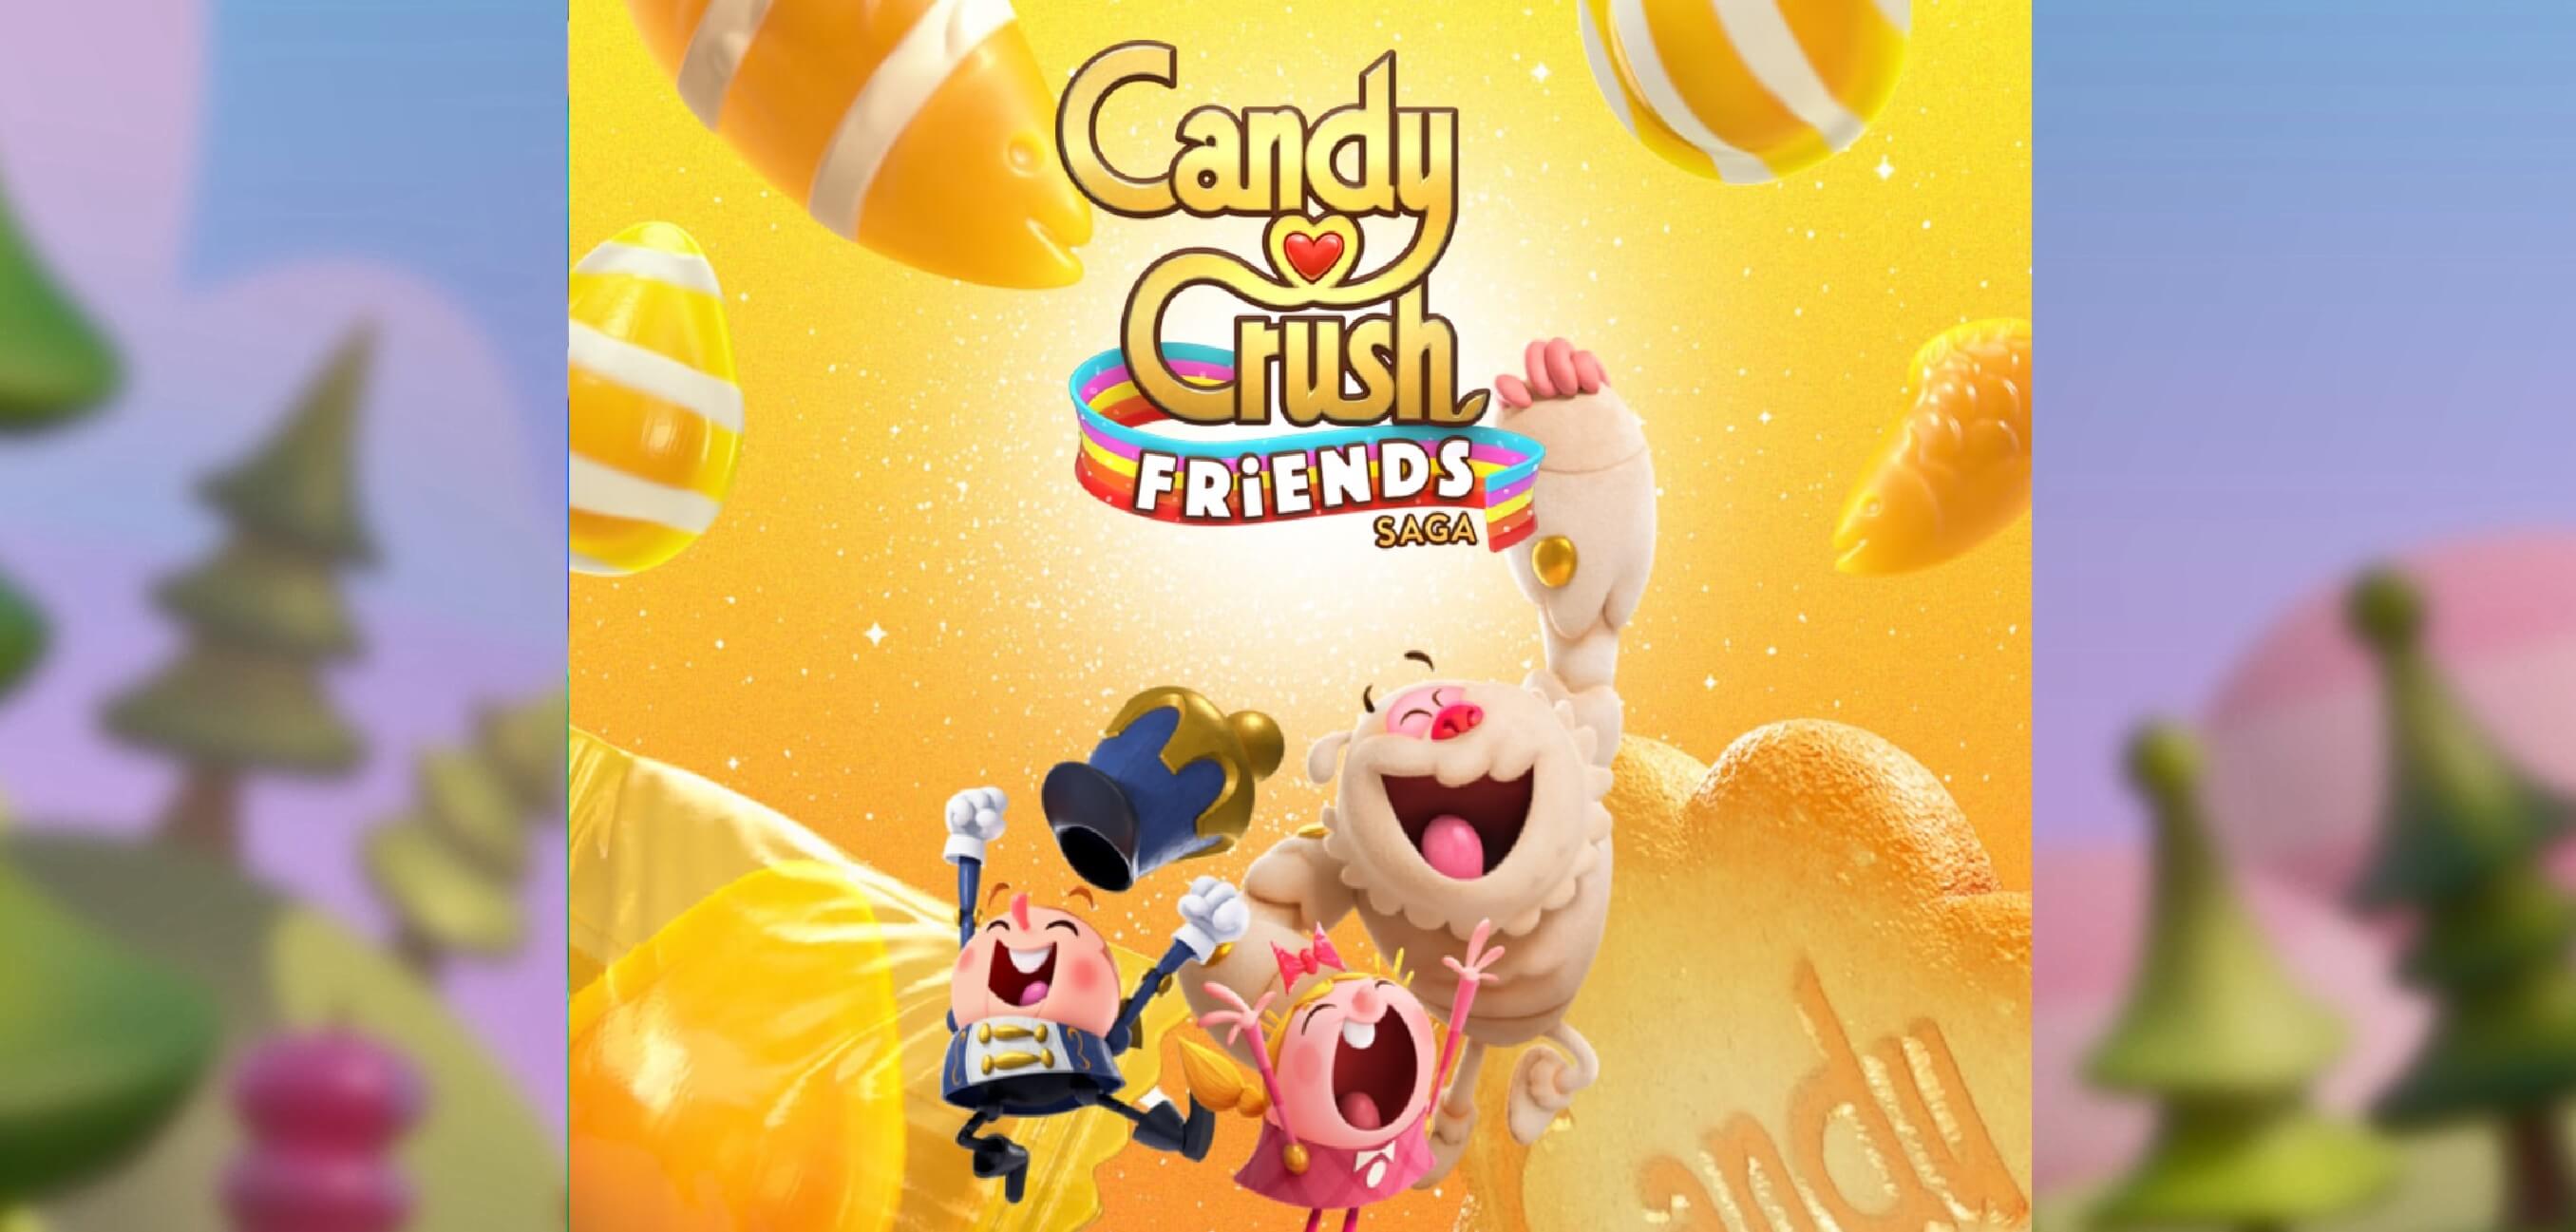 Candy Crush Friends Saga el nuevo juego de King para Windows 10, Android e iOS